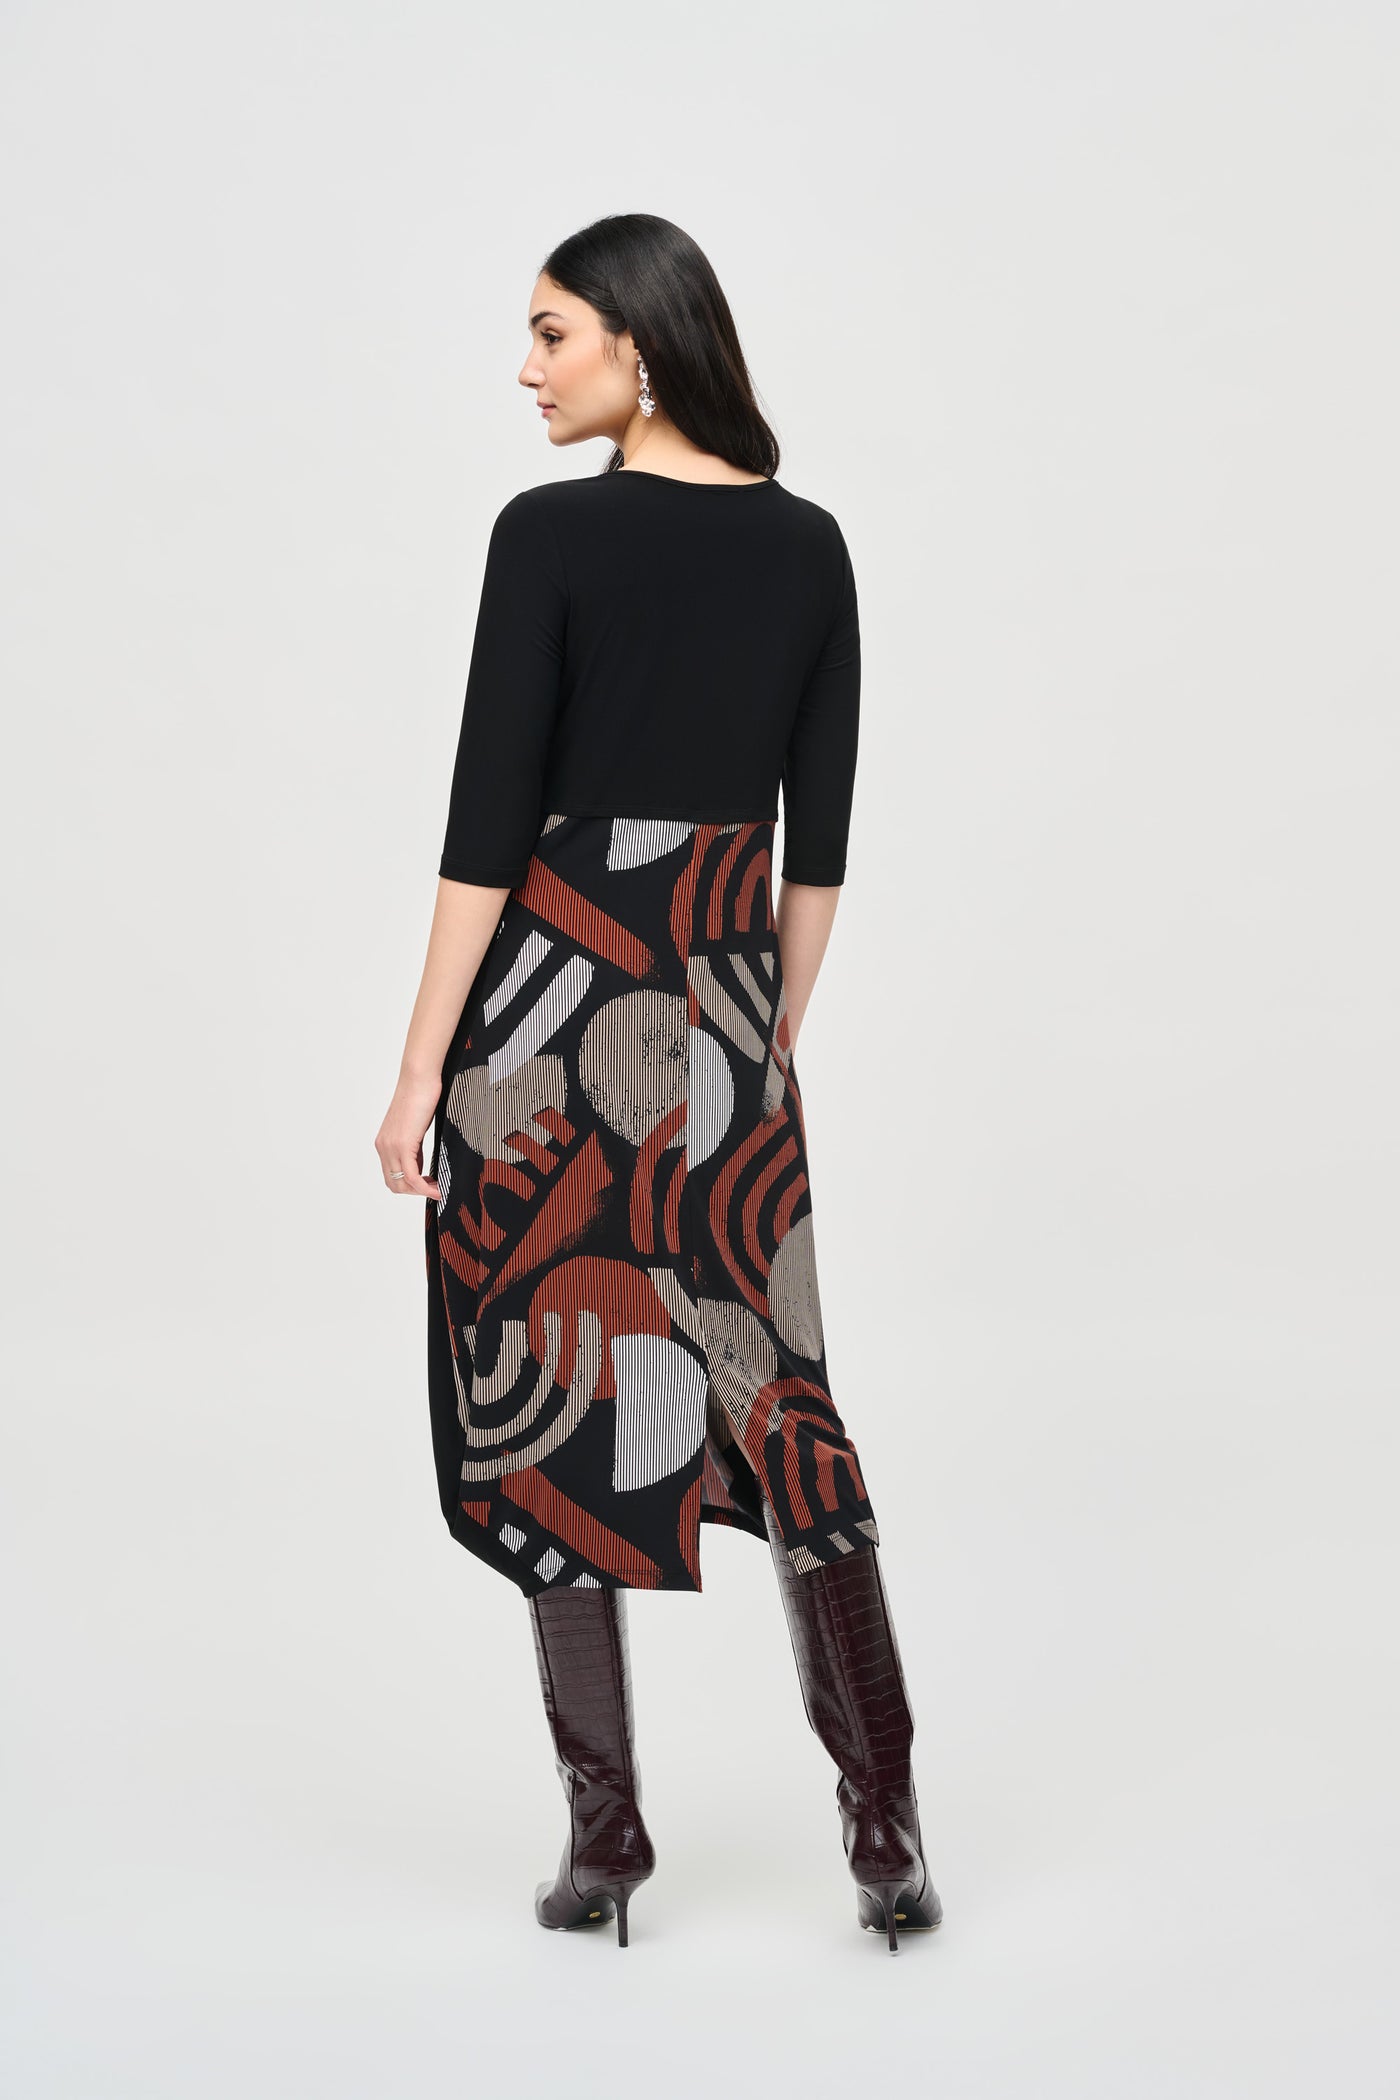 Silky Knit Geometric Print Cocoon Dress Joseph Ribkoff